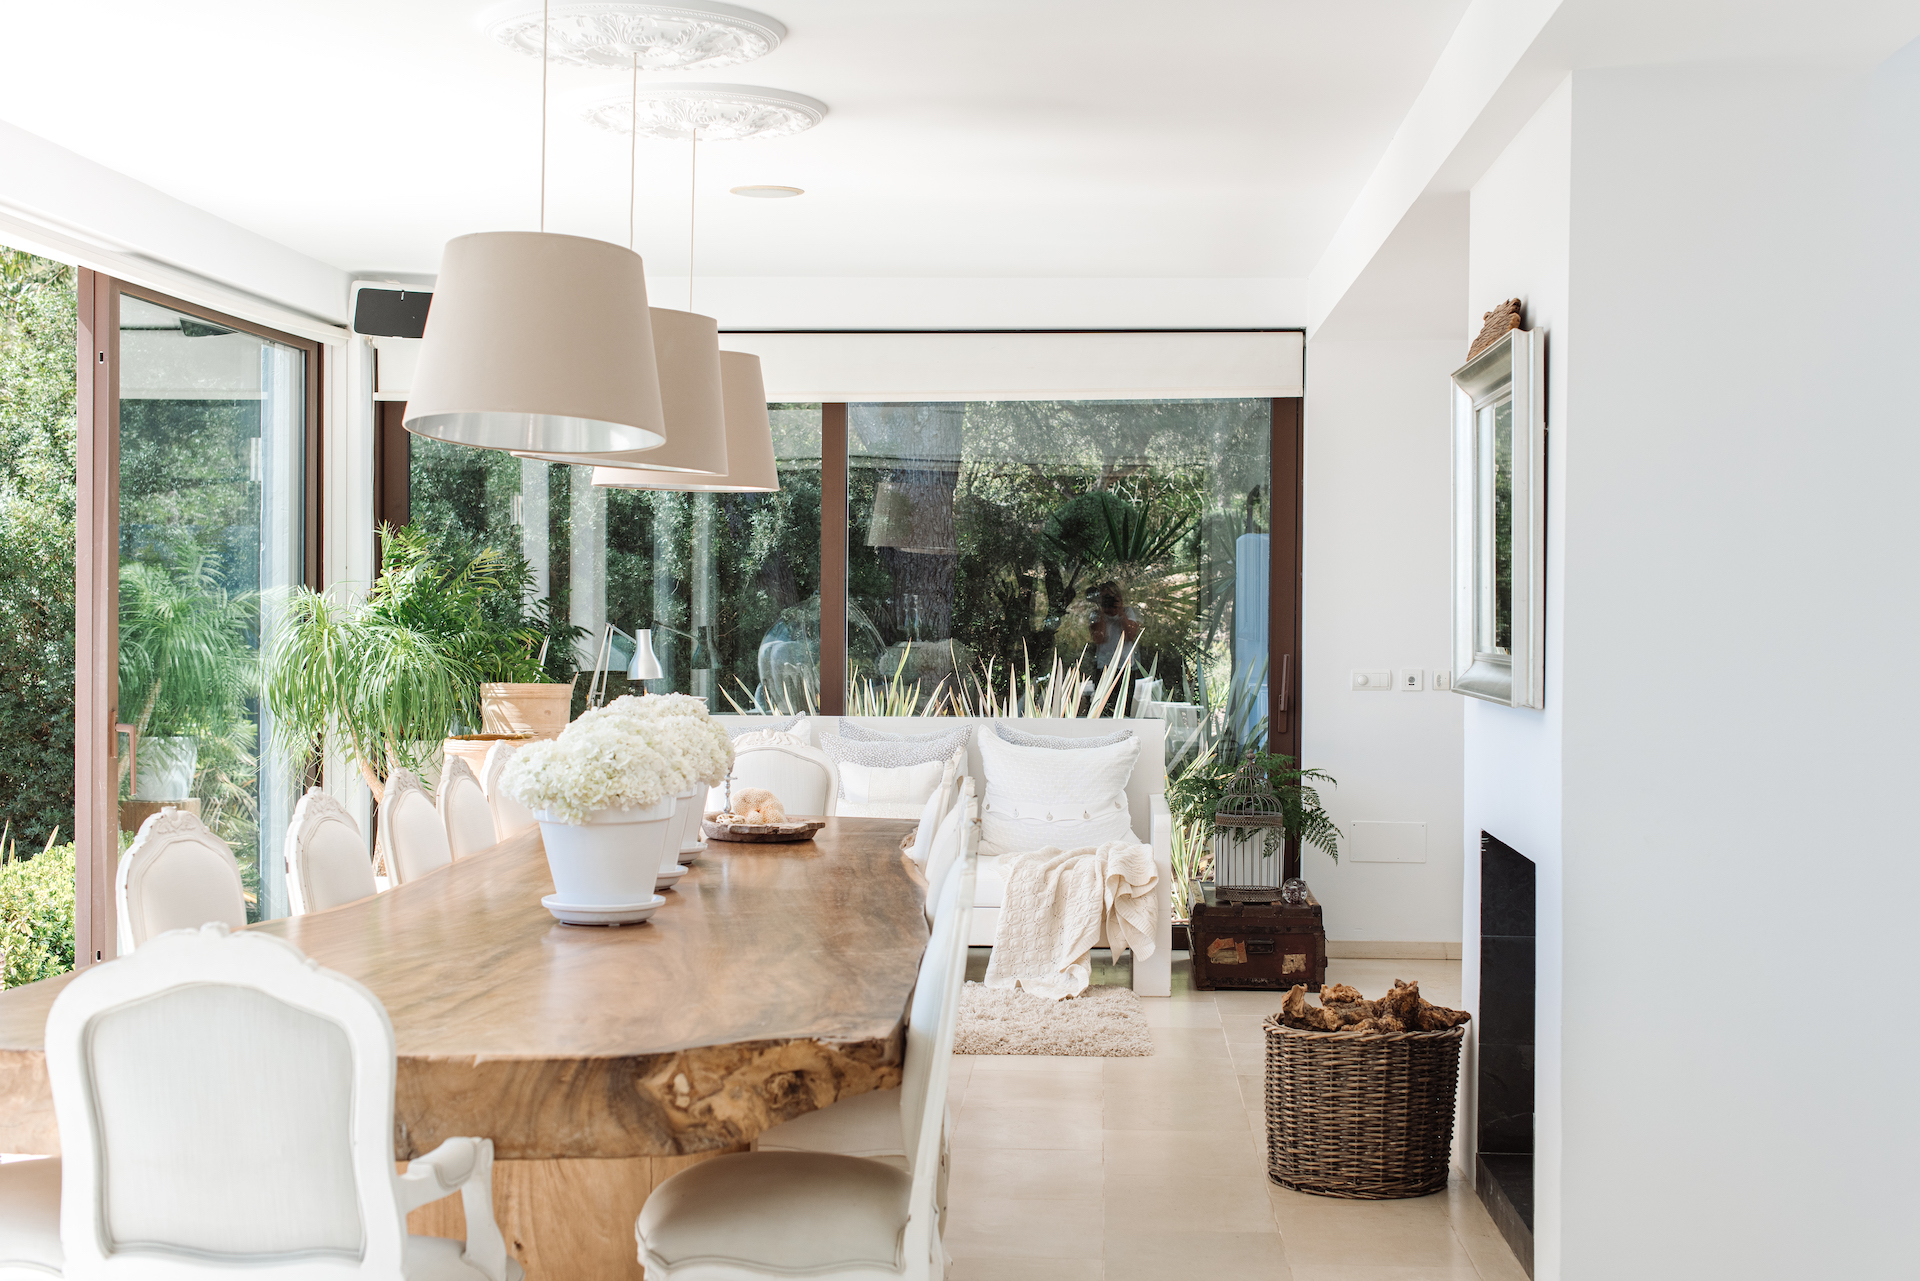 resa estates rental villa childfriendly north ibiza 2022 luxury can rio Dining room 5.jpg